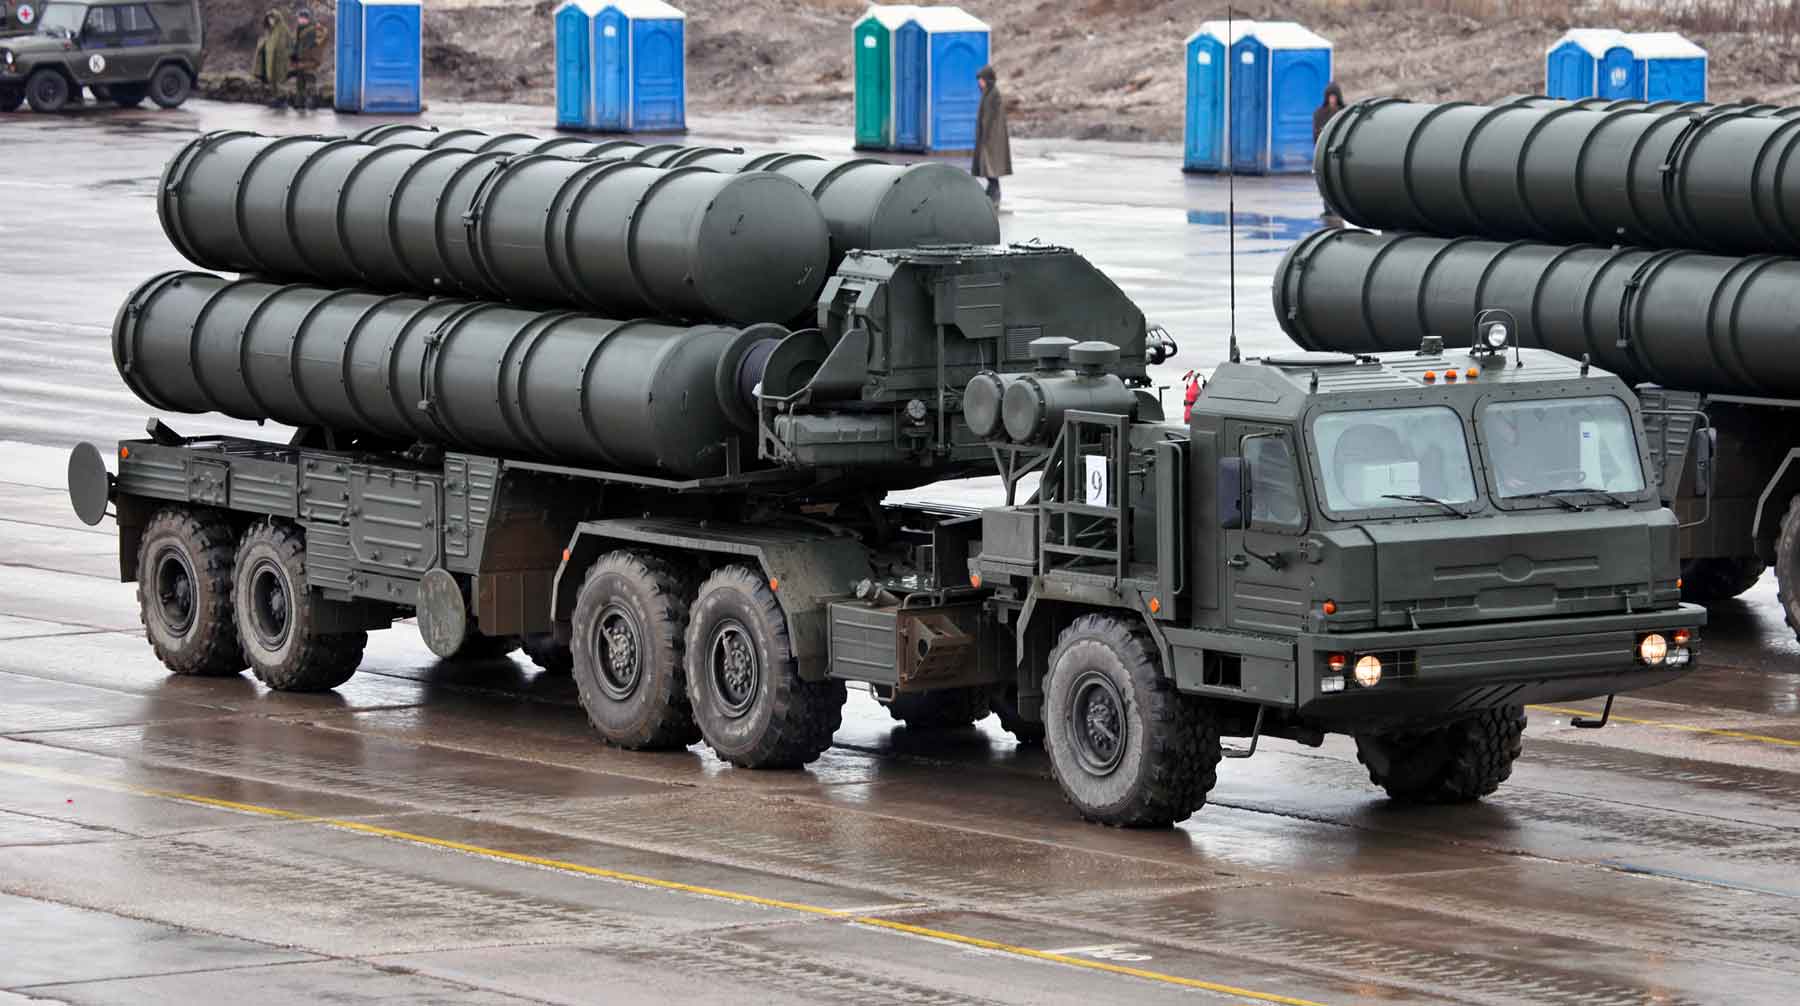 Российские ракетные комплексы имеют полную эффективность только в составе больших систем ПВО, пишет Stratfor С-400